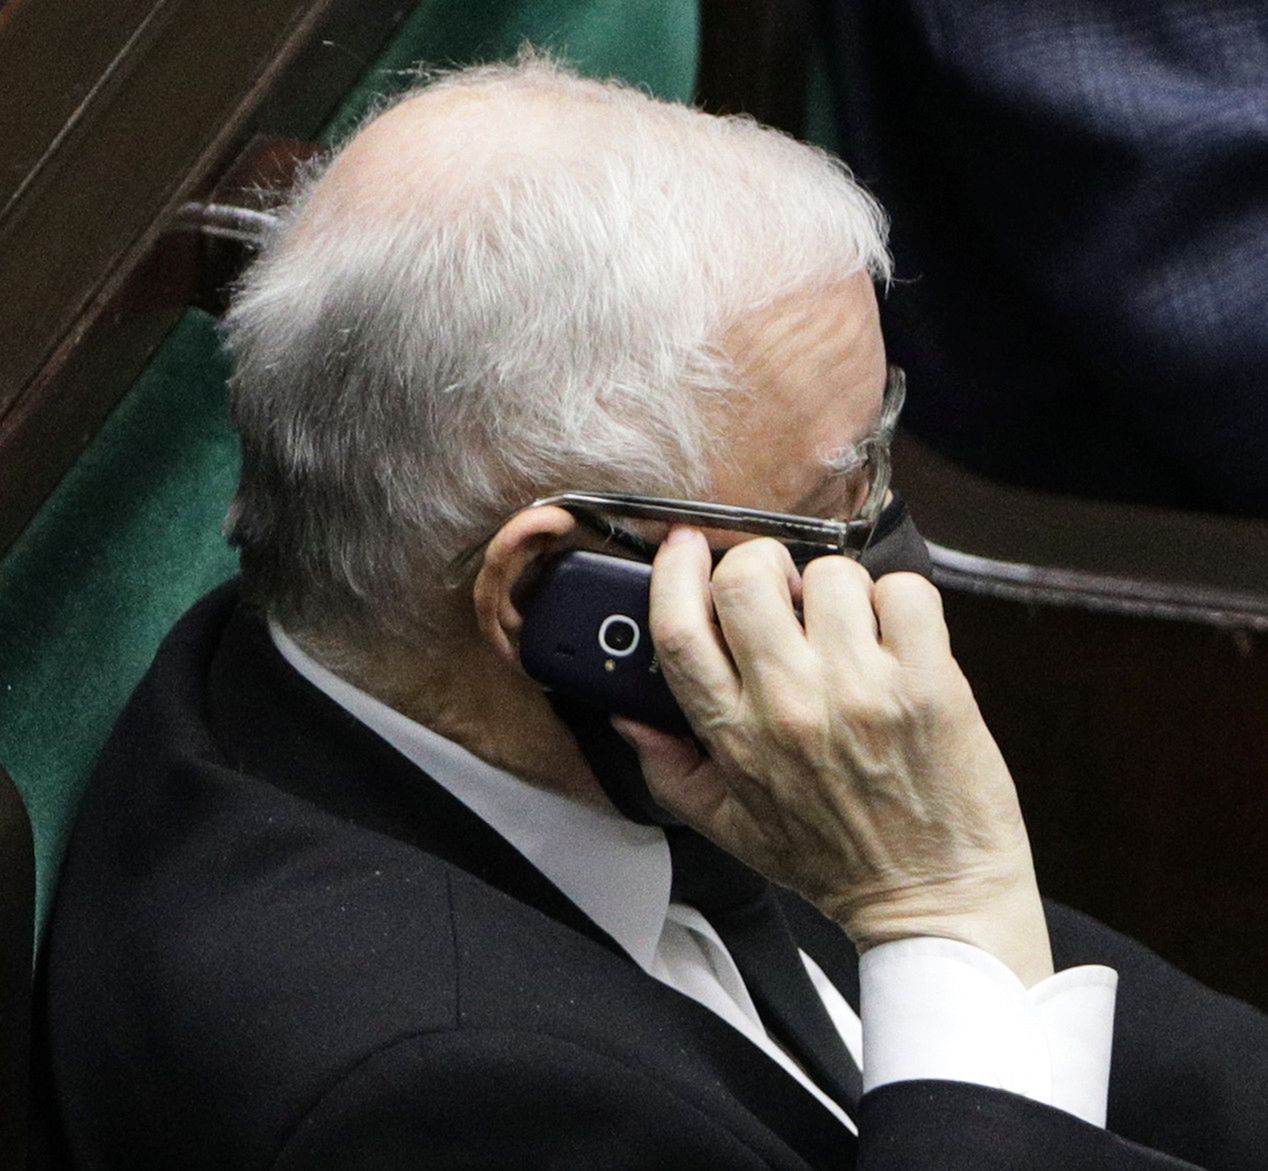 Zgadnijcie, jakiego telefonu używa Jarosław Kaczyński